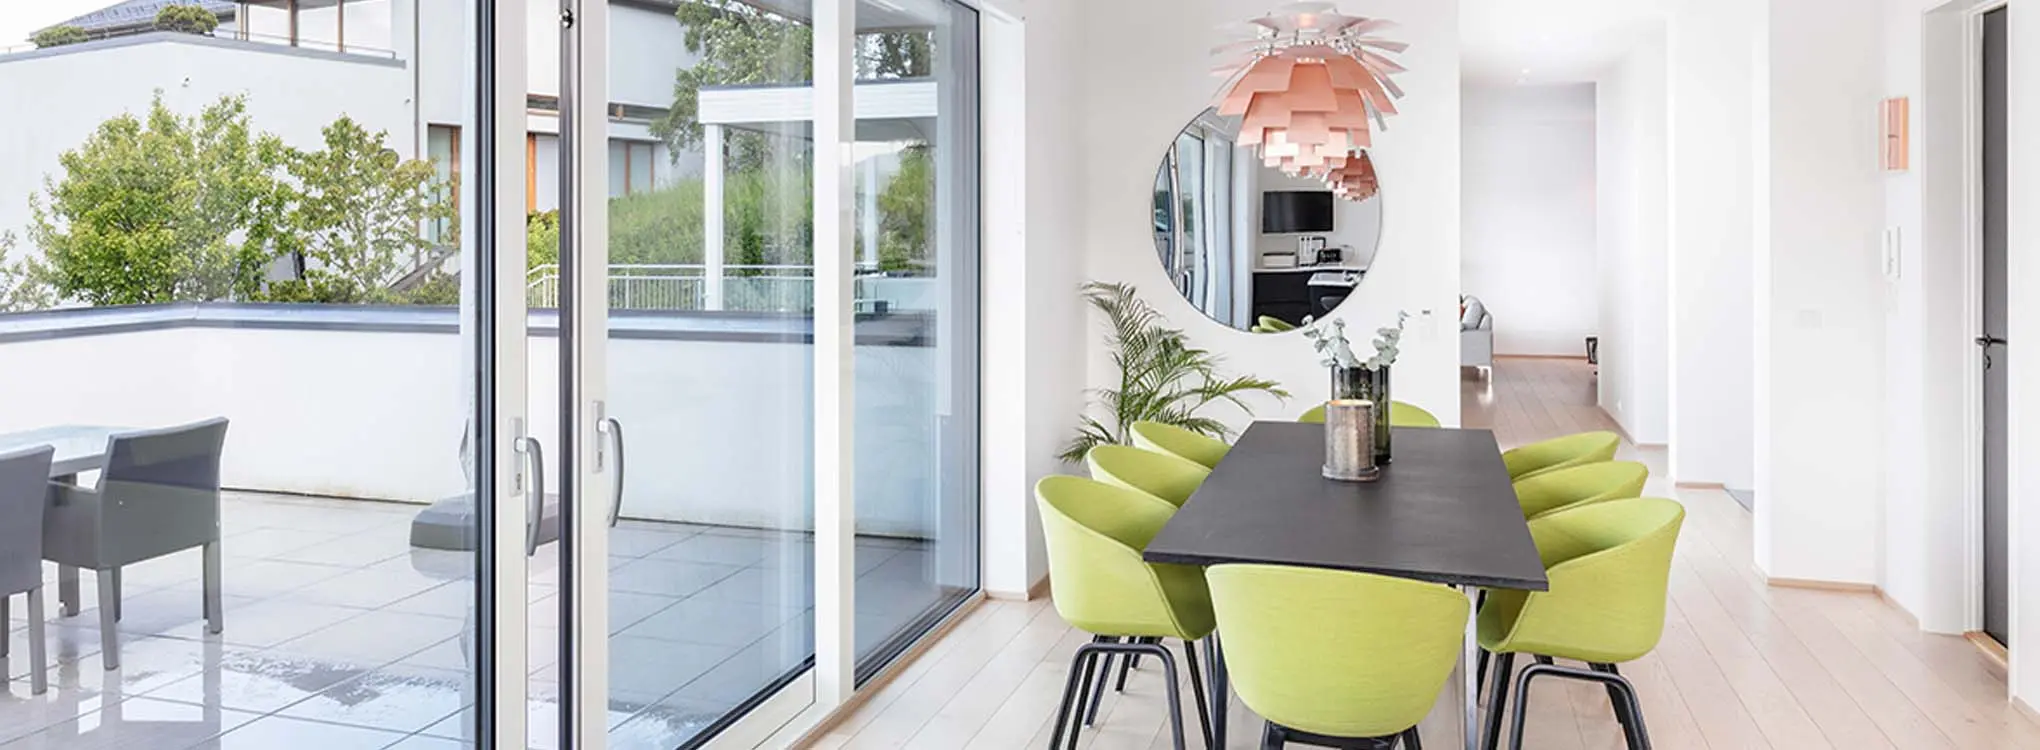 minimalistisk stue med grønne spisestoler og en åpen verandadør i bakgrunnen